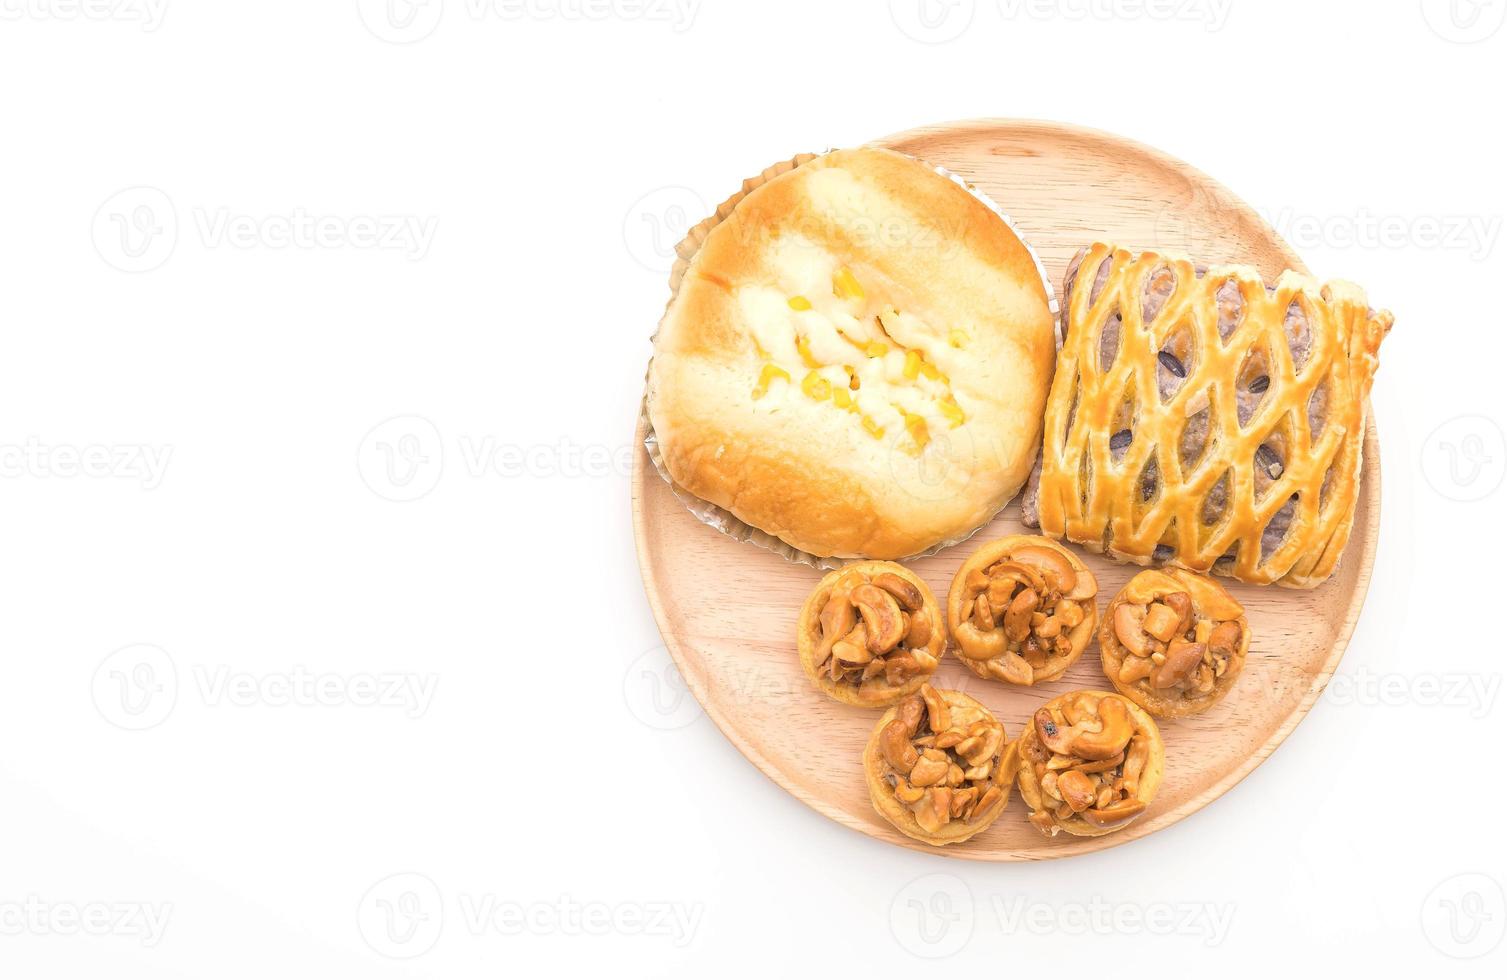 gâteau au caramel, pain avec mayonnaise au maïs et tartes au taro sur fond blanc photo